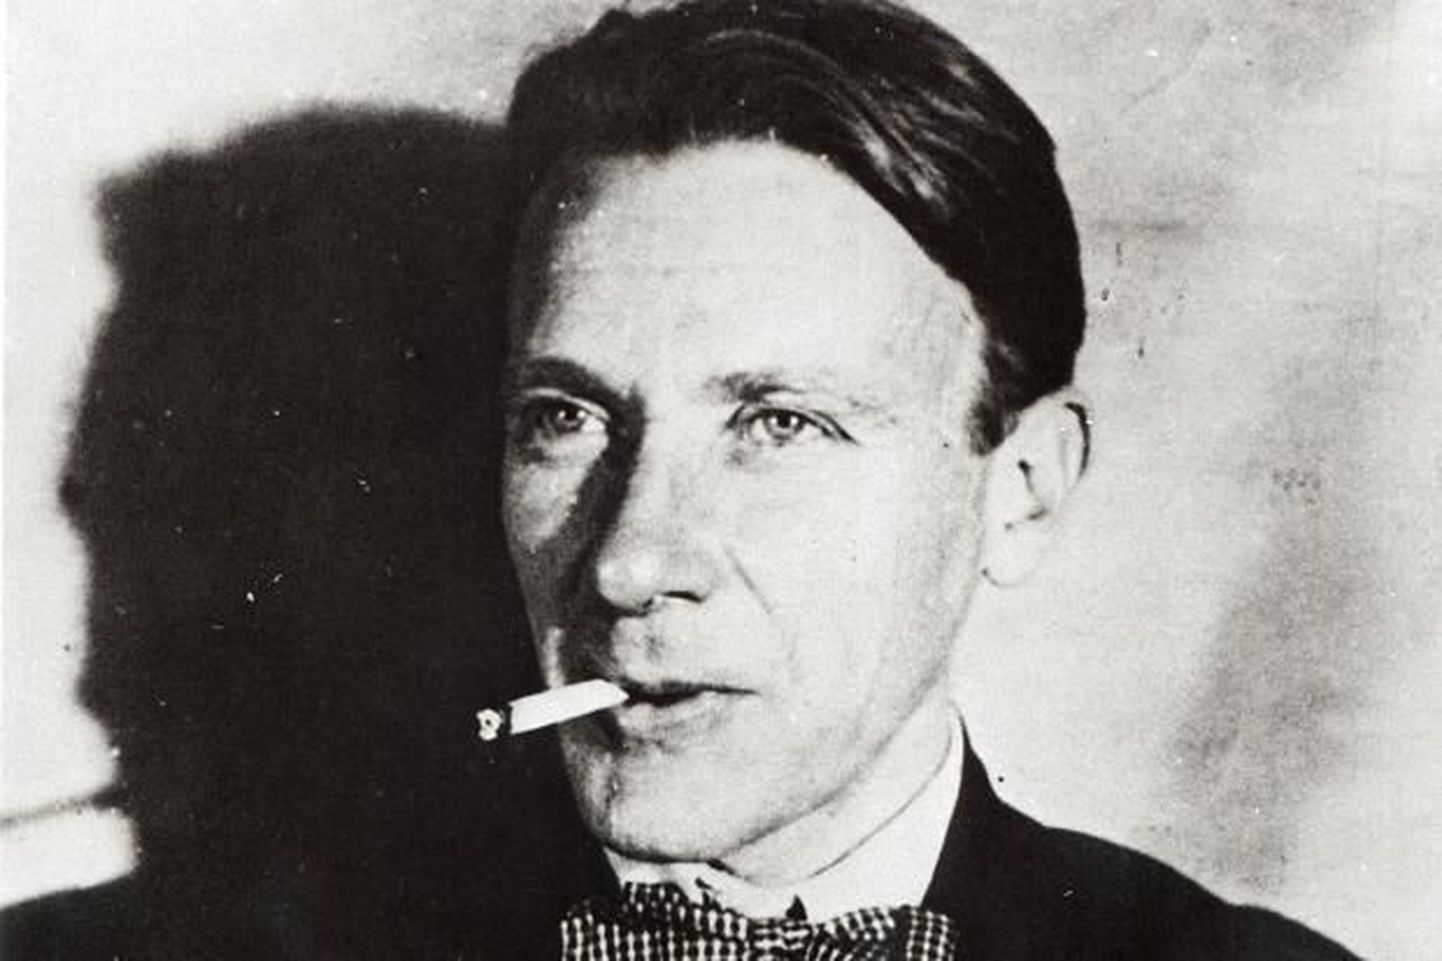 Mihhail Bulgakov